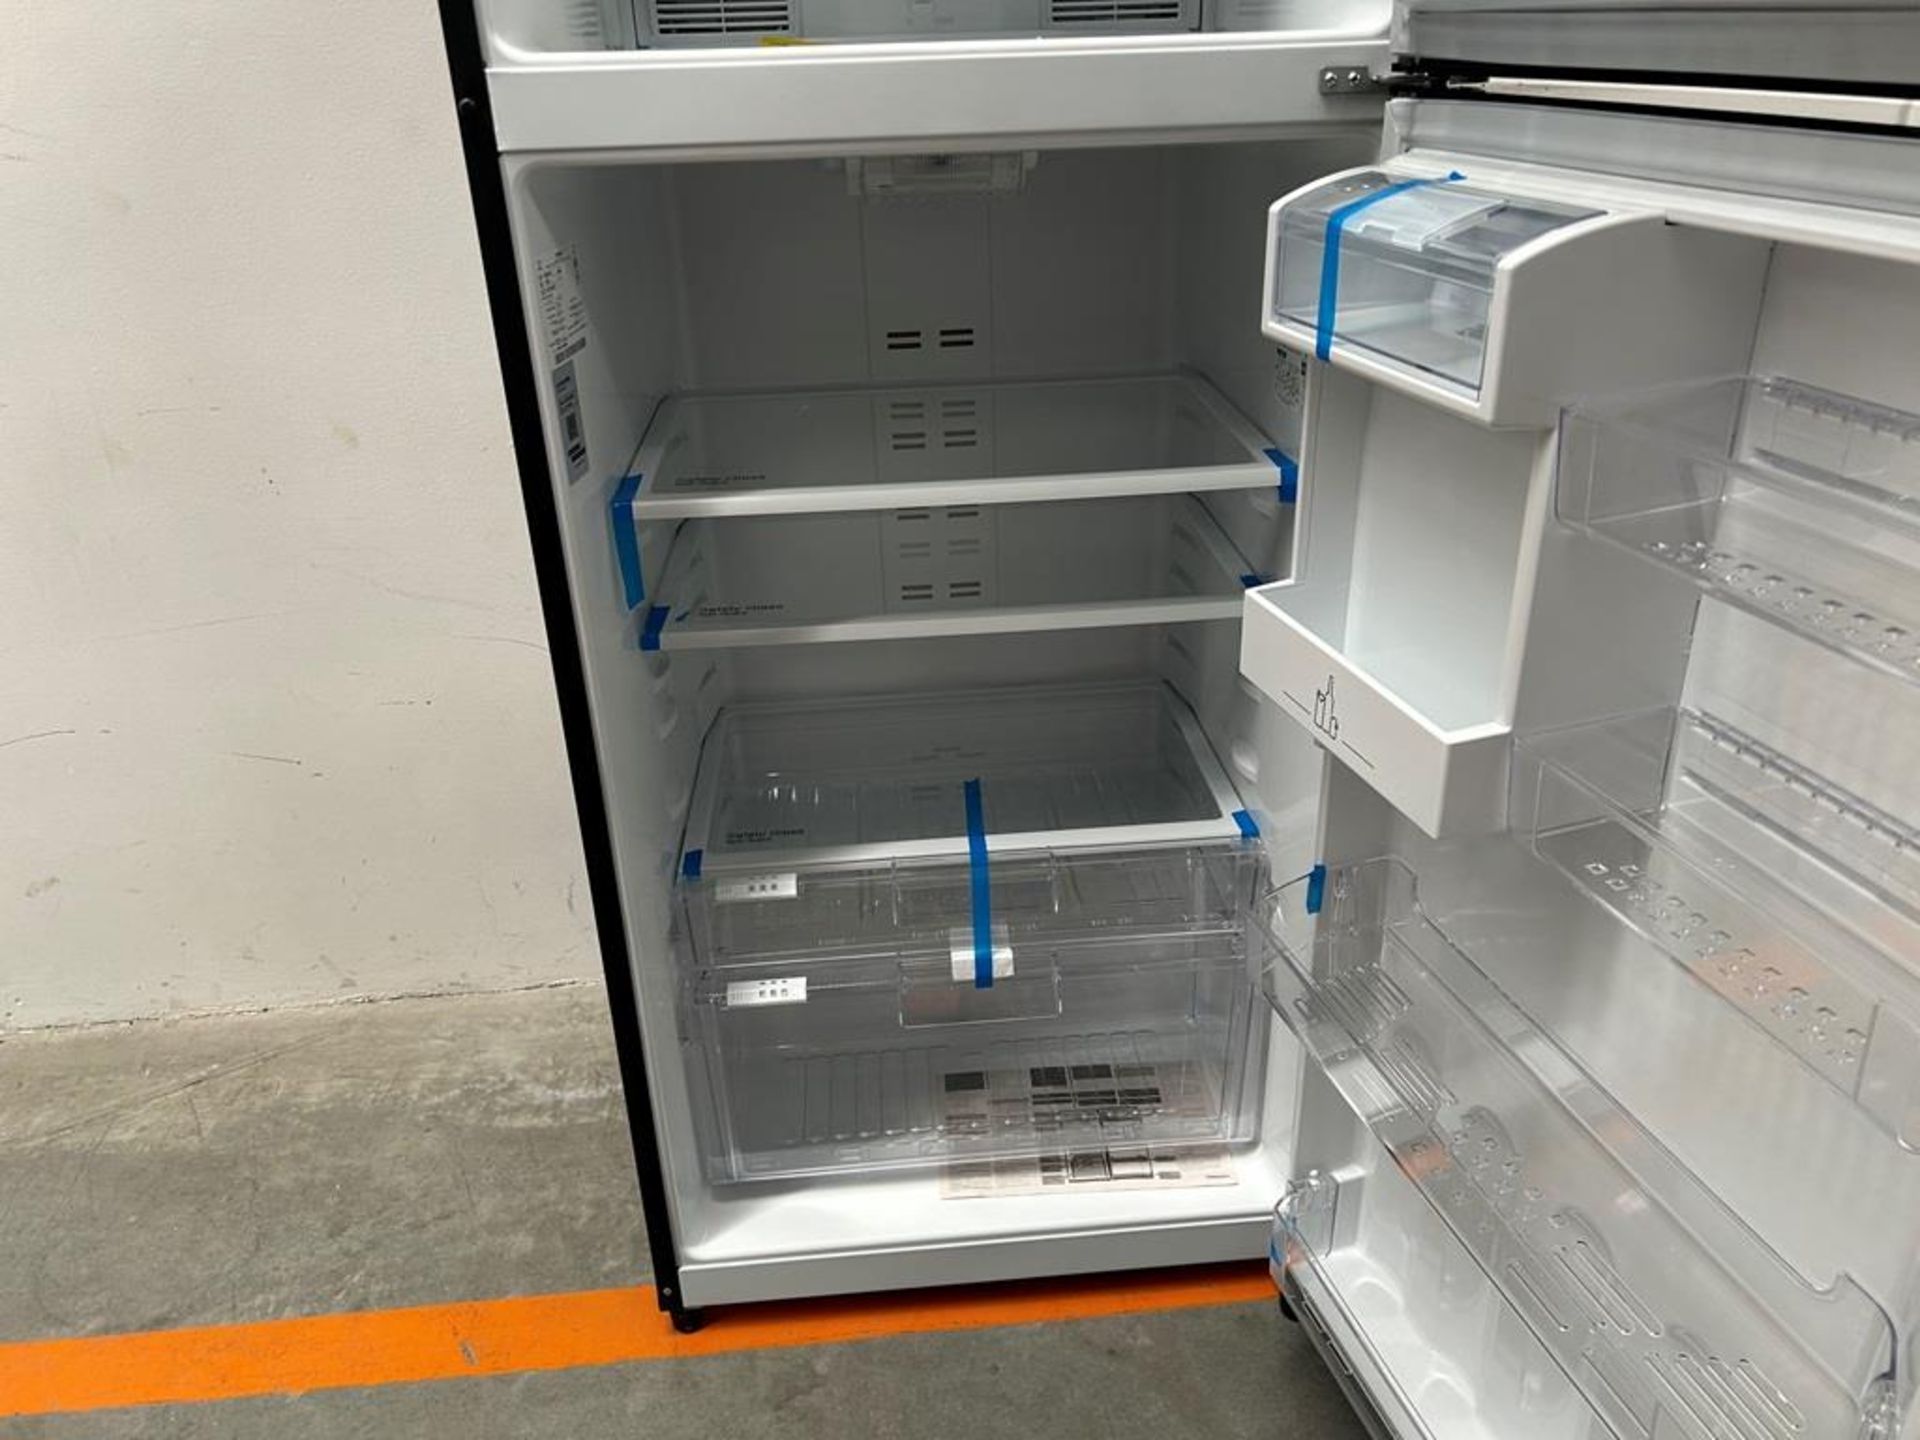 (NUEVO) Refrigerador con dispensador de agua Marca MABE, Modelo RMS510IBMRXA, Serie 04327, Color GR - Image 6 of 11